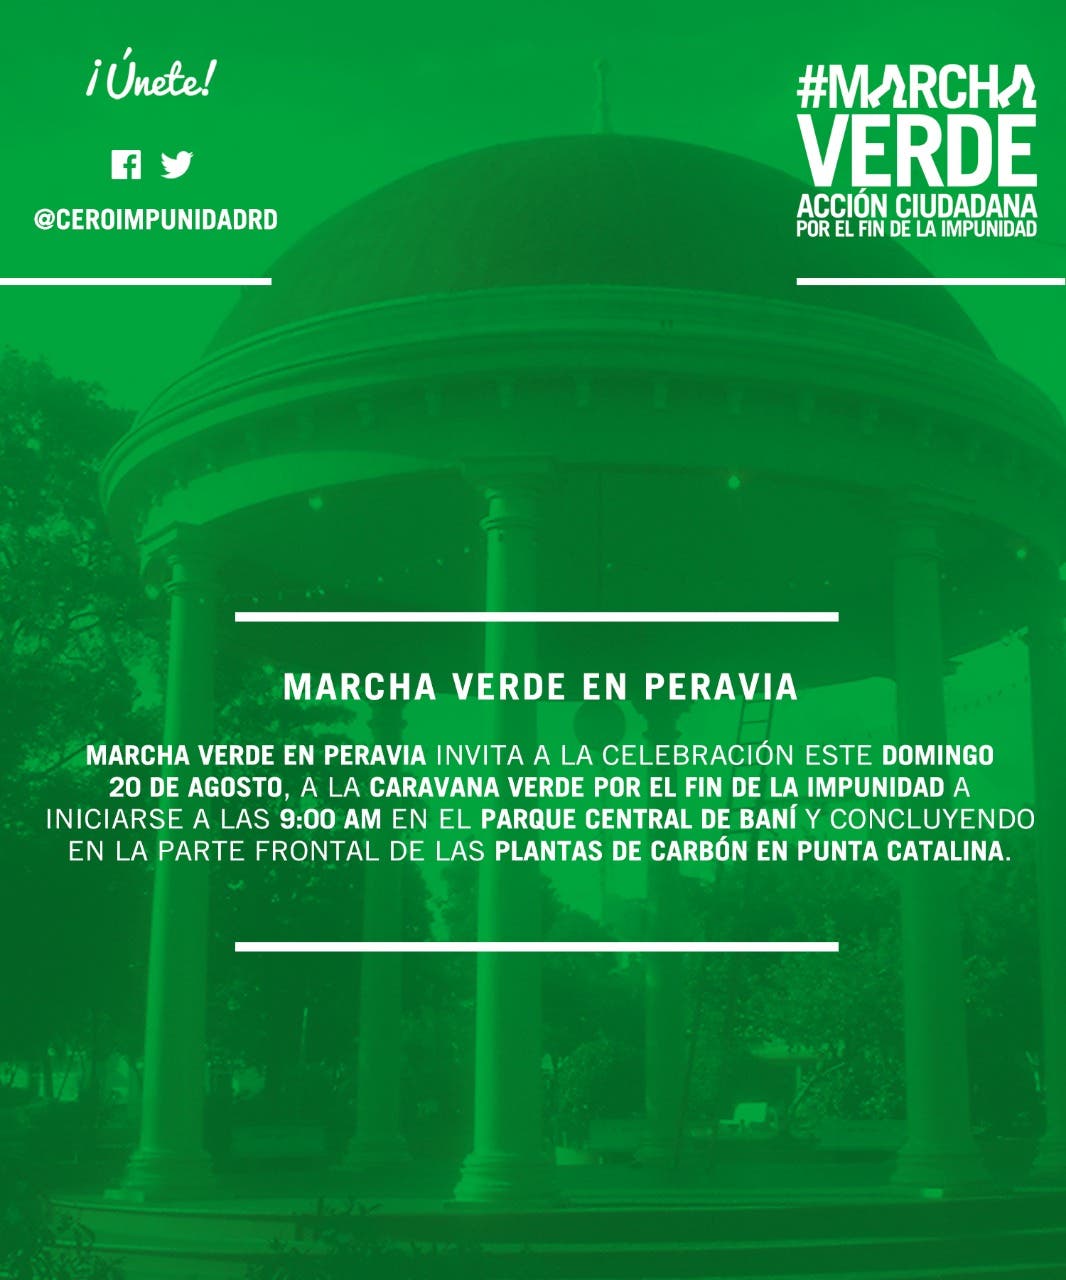 Marcha Verde reclamará el domingo la salida de Odebrecht del país frente a Punta Catalina